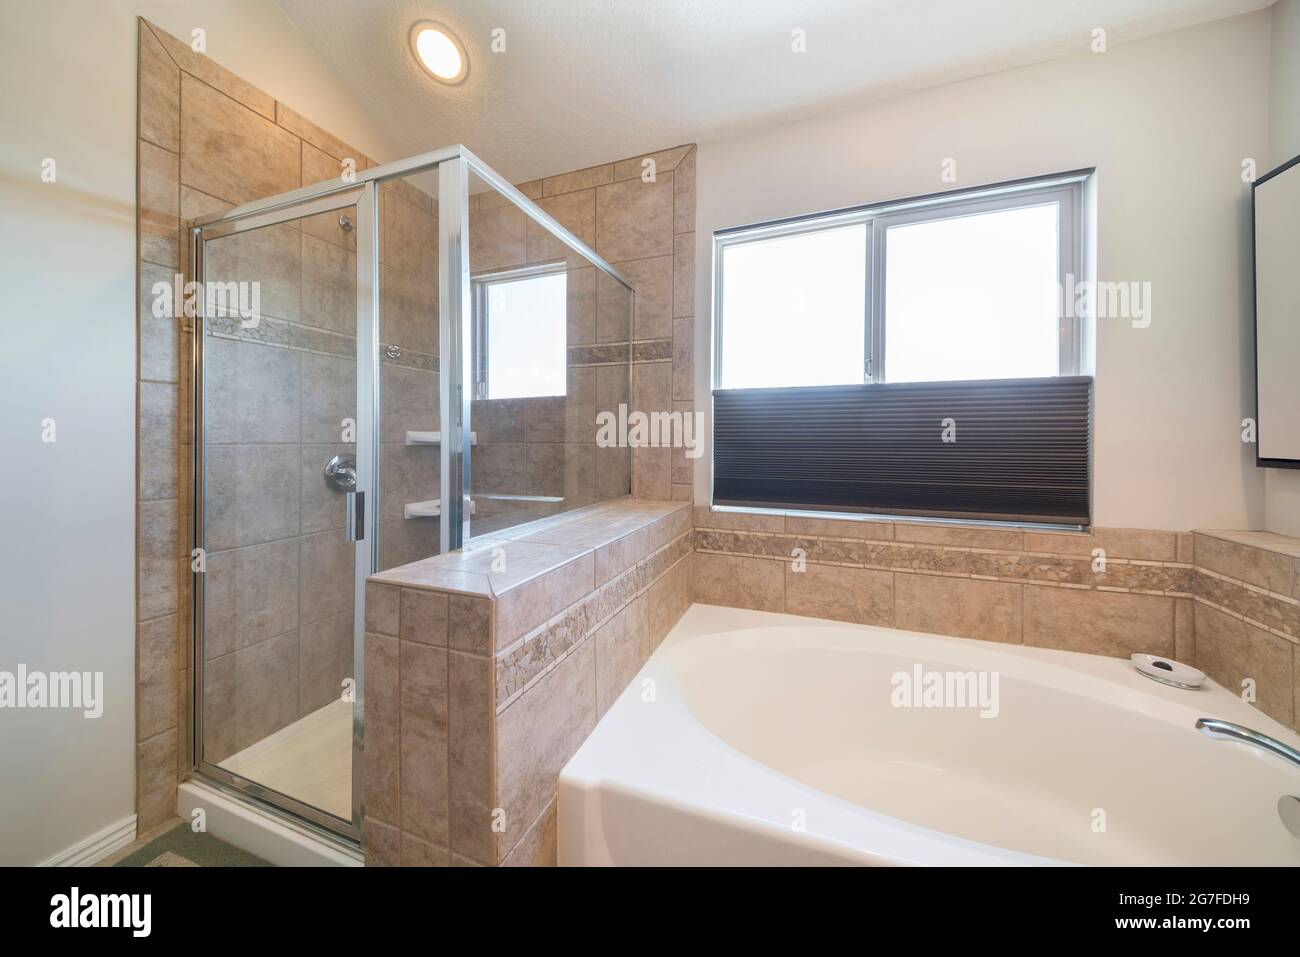 Dusche und Badewanne in einem Badezimmer mit Fenster Stockfotografie - Alamy